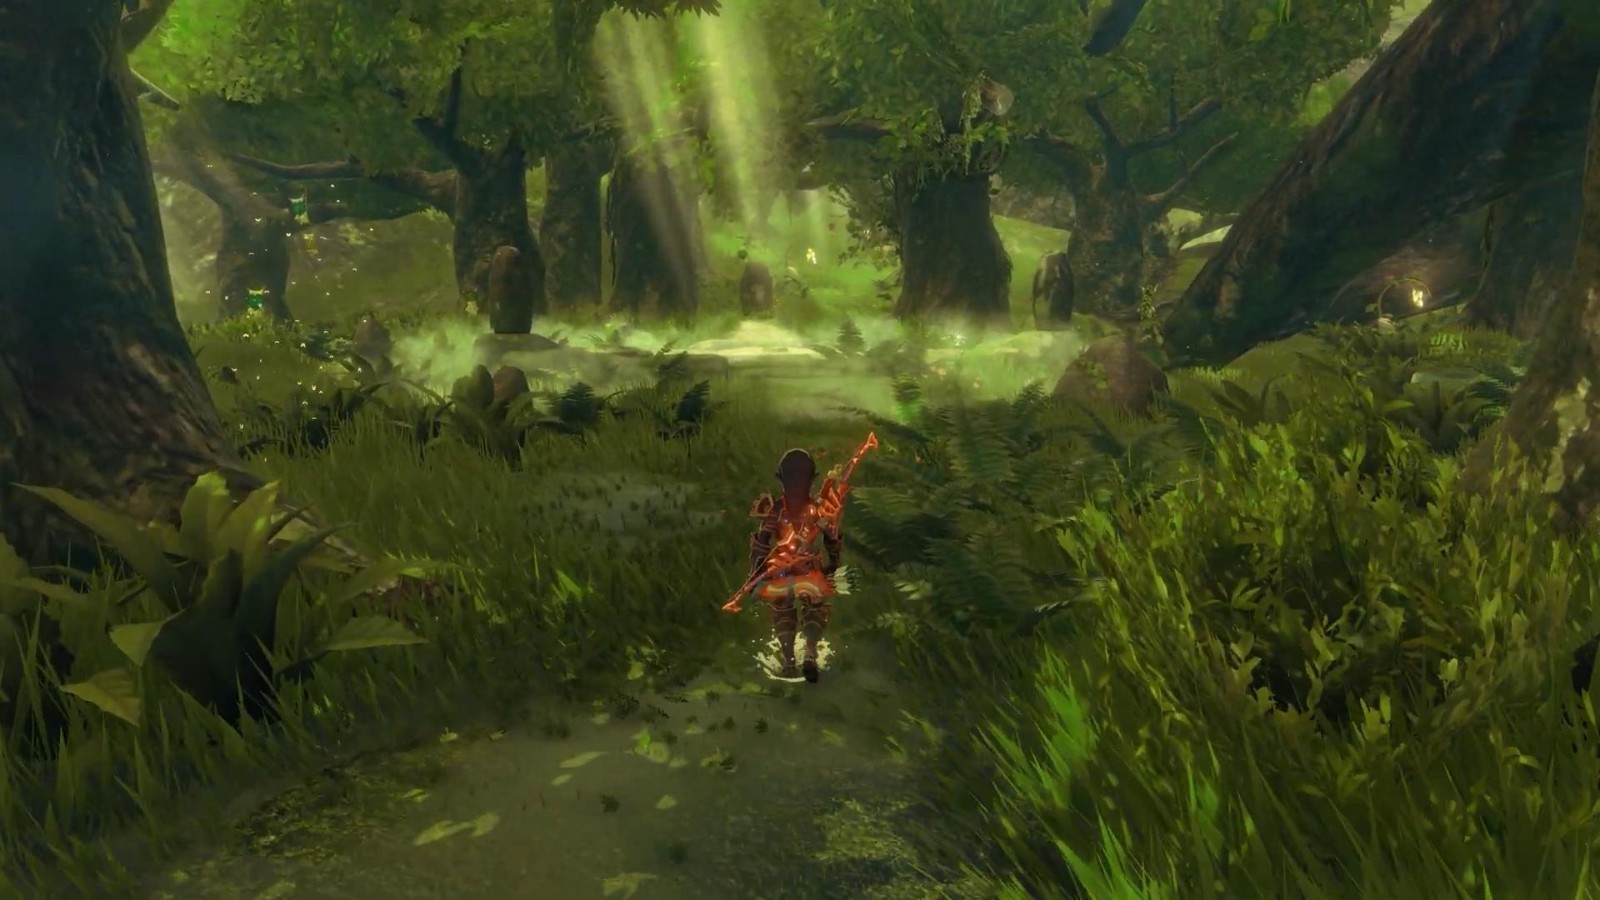 《曠野之息》在PC上以8K+光追重著色運行 畫面驚豔